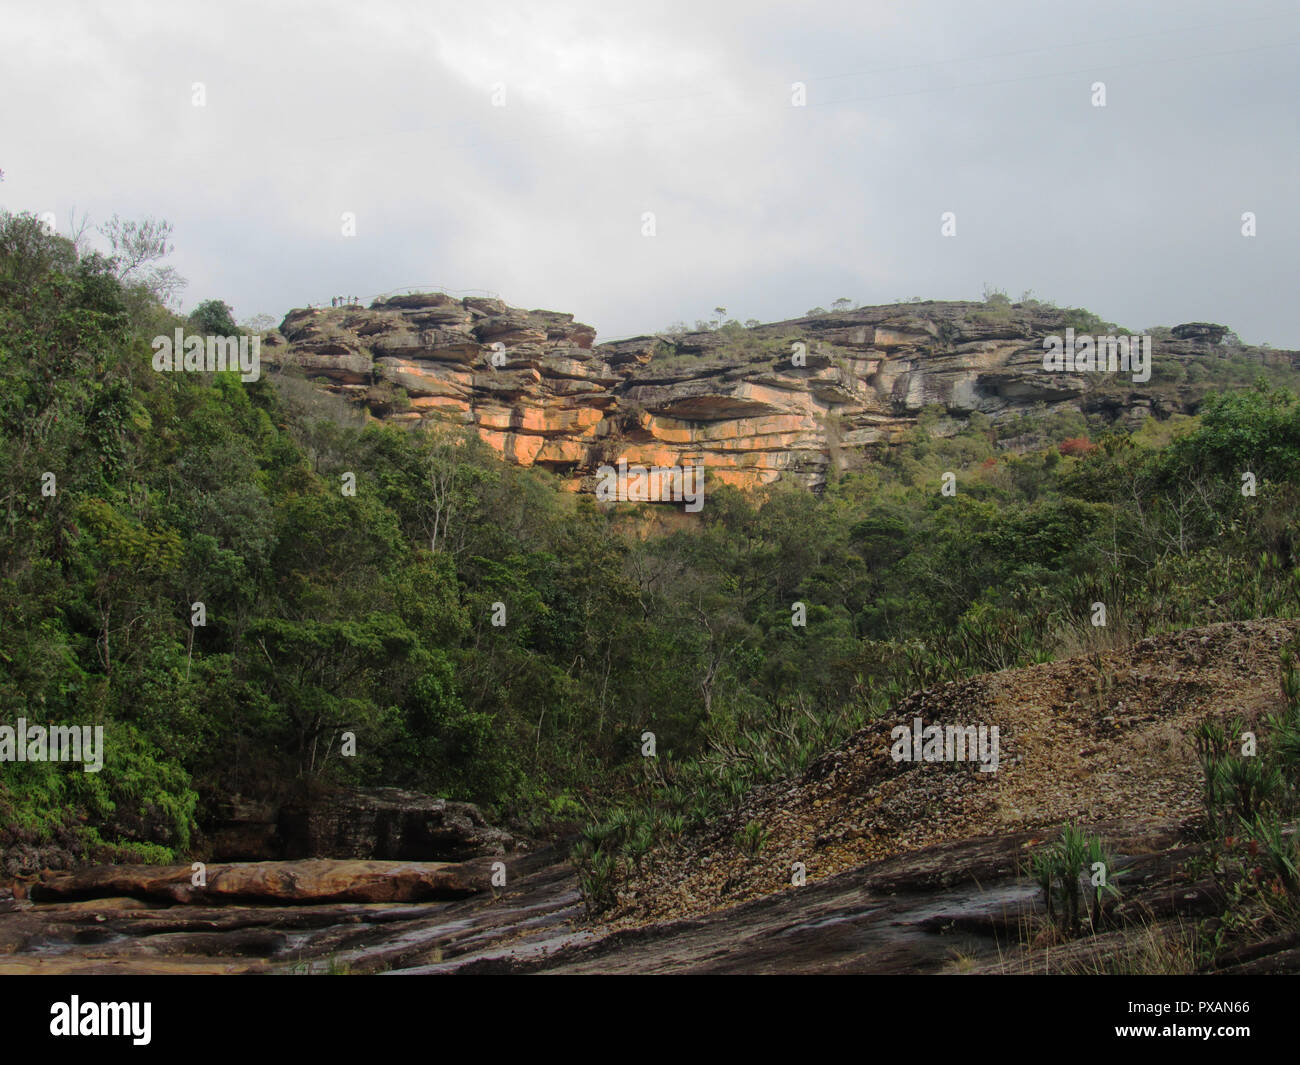 Vista do Paredão rochoso das Cachoeira das Andorinhas, parque das Andorinhas Ouro Preto - MG. Stock Photo